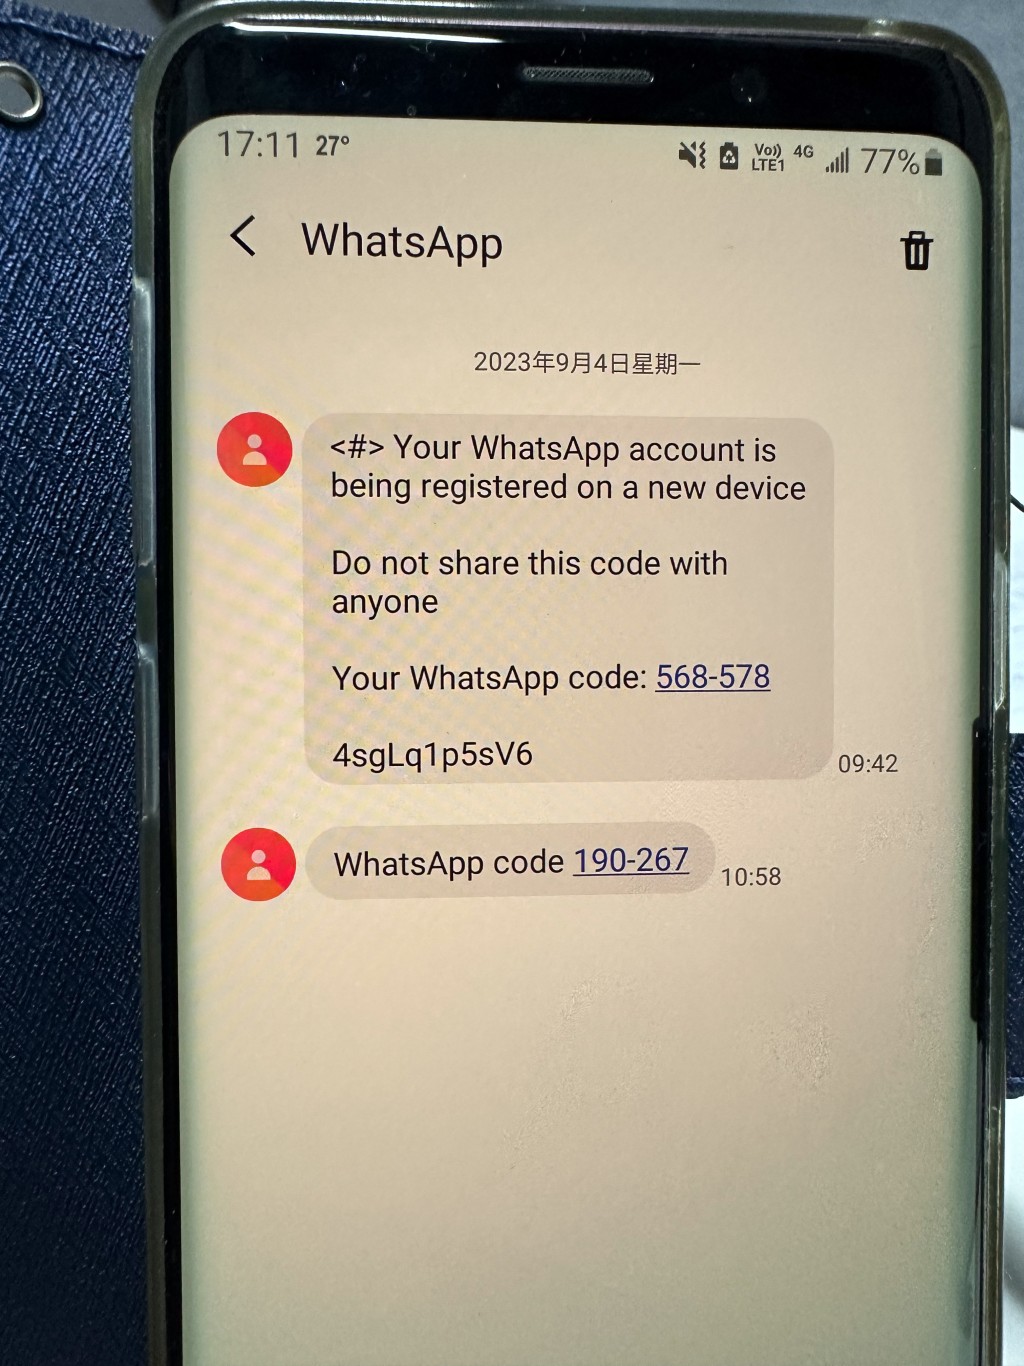 事主接連收到駭客發出的假Whatsapp，要求她輸入代碼。